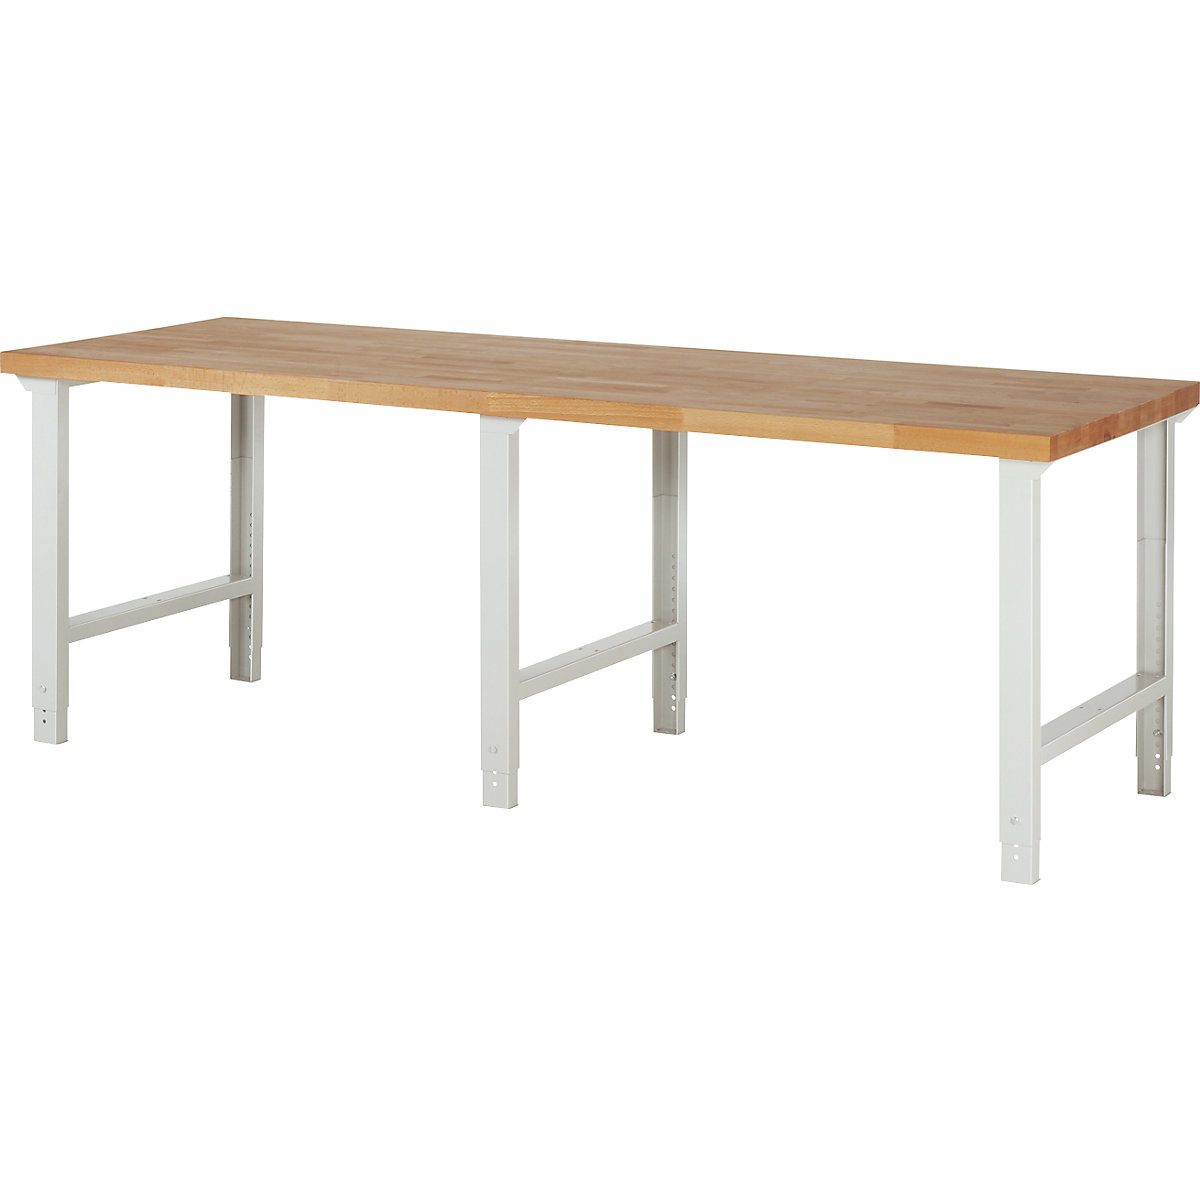 EUROKRAFTpro – Modulna delovna miza, brez spodnjih elementov, zelo široka izvedba, ŠxG 2500 x 900 mm